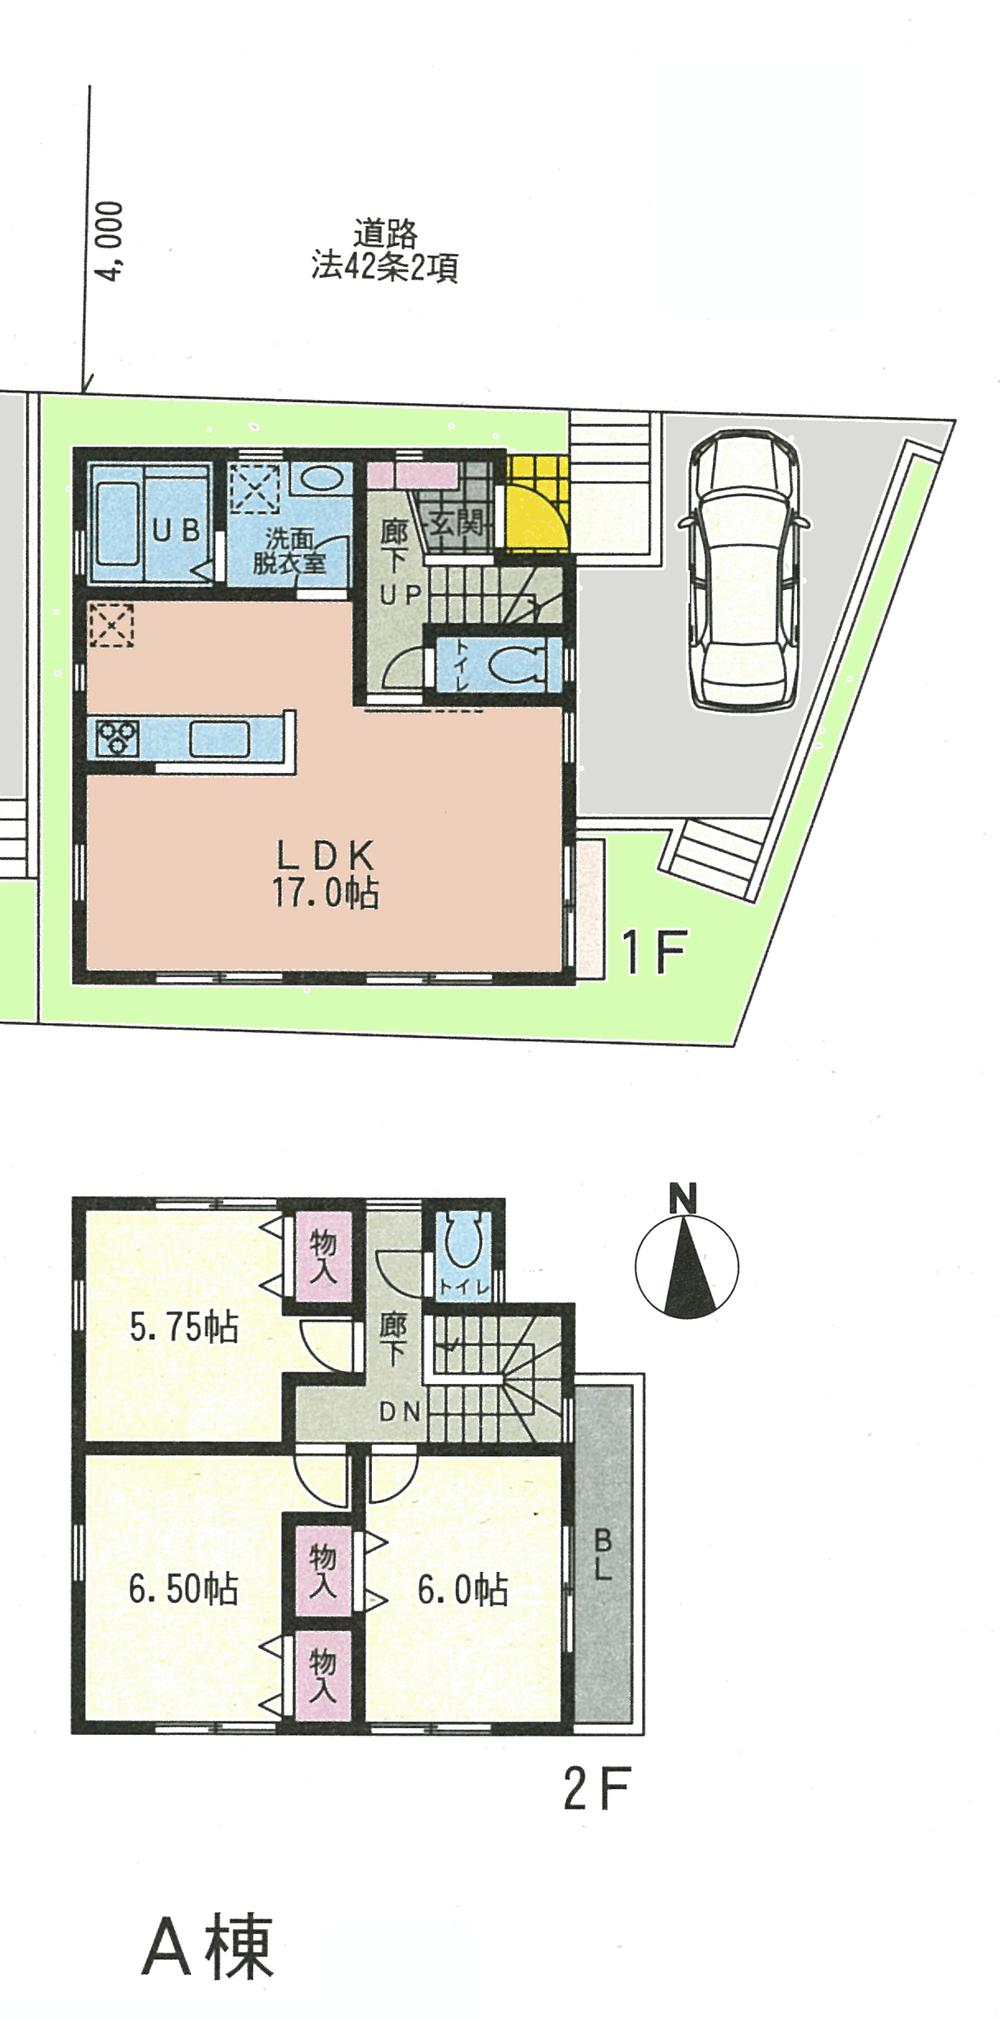 Floor plan. (A Building), Price 32,800,000 yen, 3LDK, Land area 88.13 sq m , Building area 84.46 sq m